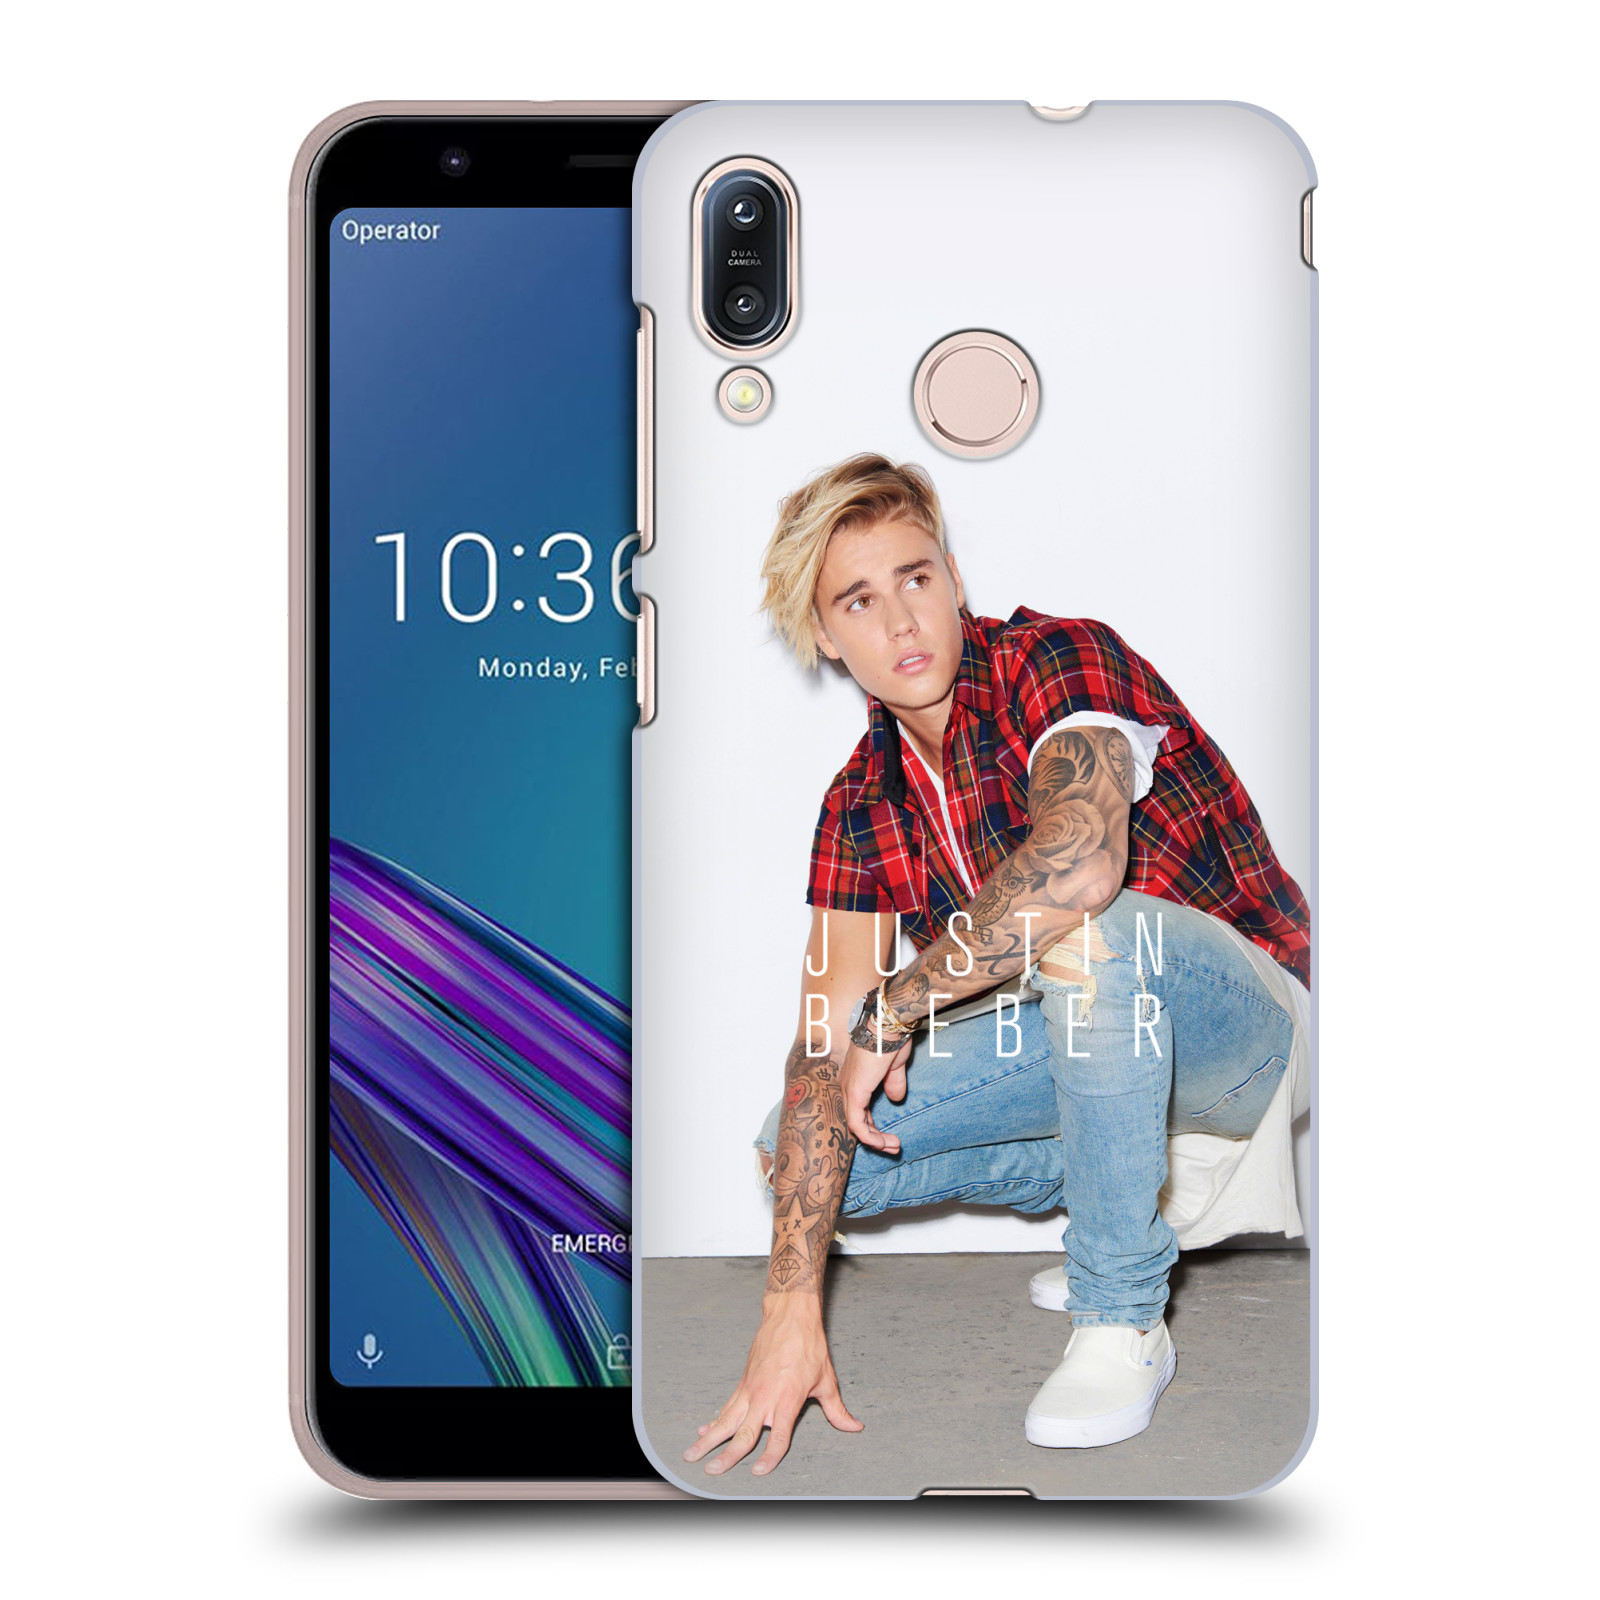 Pouzdro na mobil Asus Zenfone Max M1 (ZB555KL) - HEAD CASE - Justin Bieber foto Purpose tour kalendář